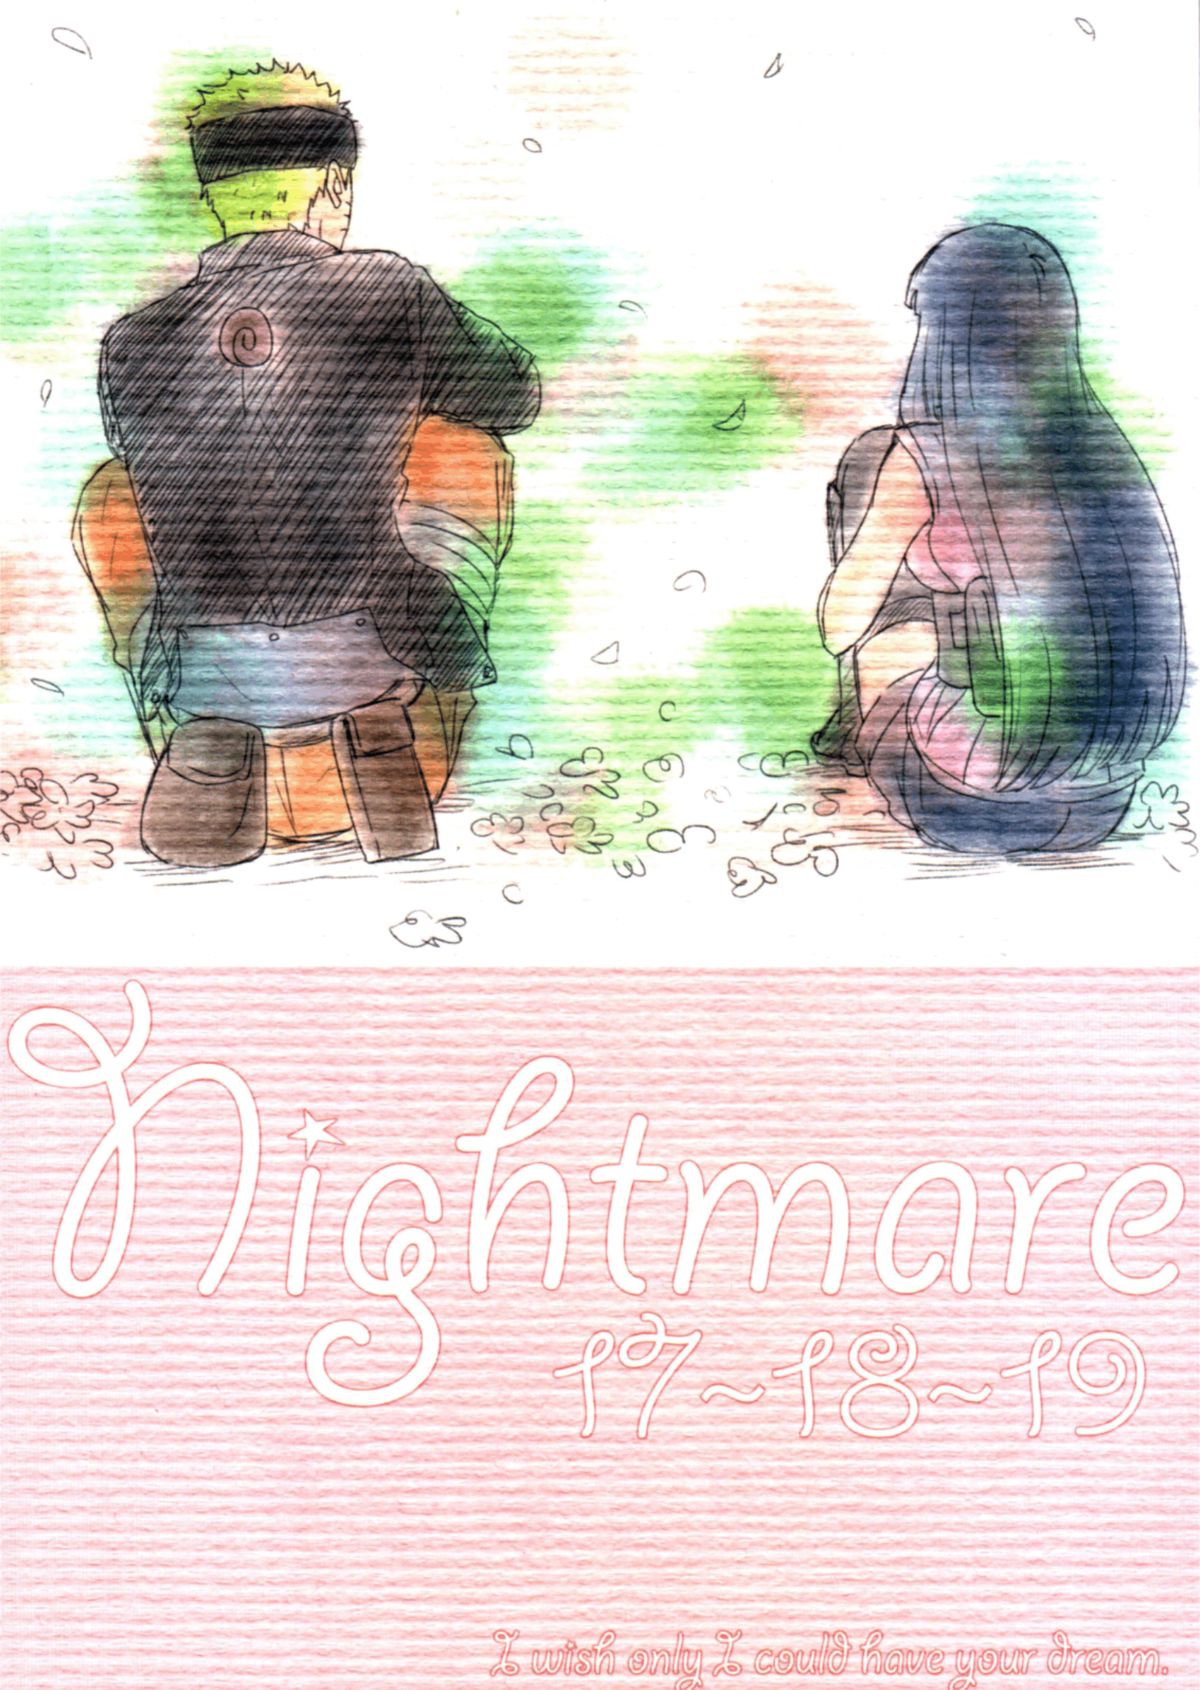 (全忍集結) [blink (しもやけ)] A Sweet Nightmare (NARUTO -ナルト-) [英訳]